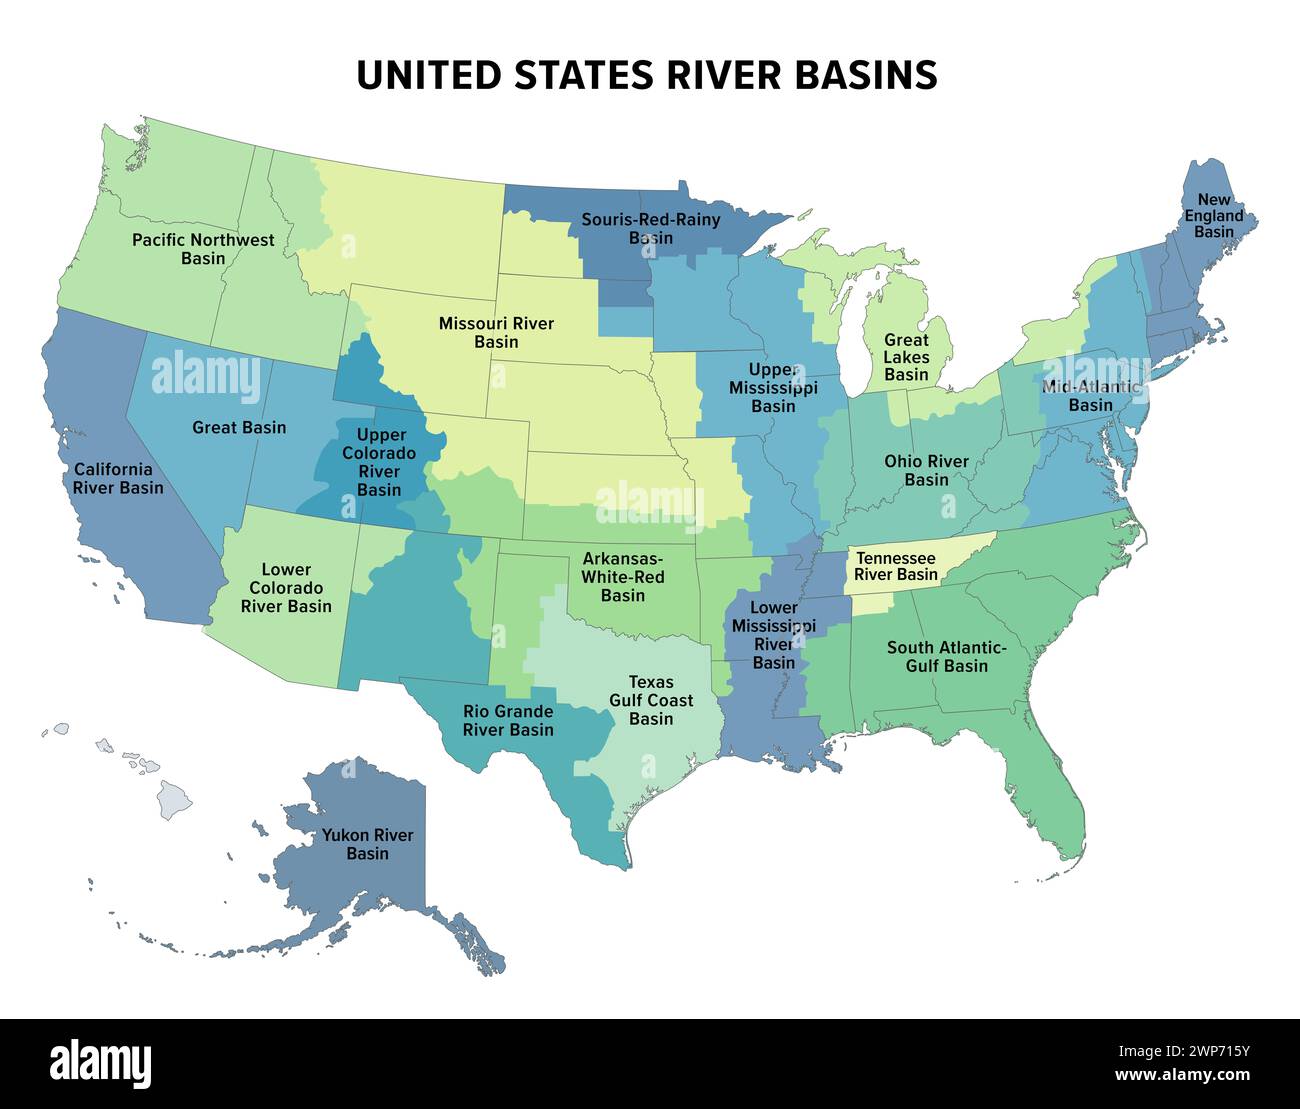 Grandi bacini fluviali degli Stati Uniti, mappa politica. Diciannove grandi bacini fluviali, evidenziati in colori diversi. Anche con i confini degli stati. Foto Stock